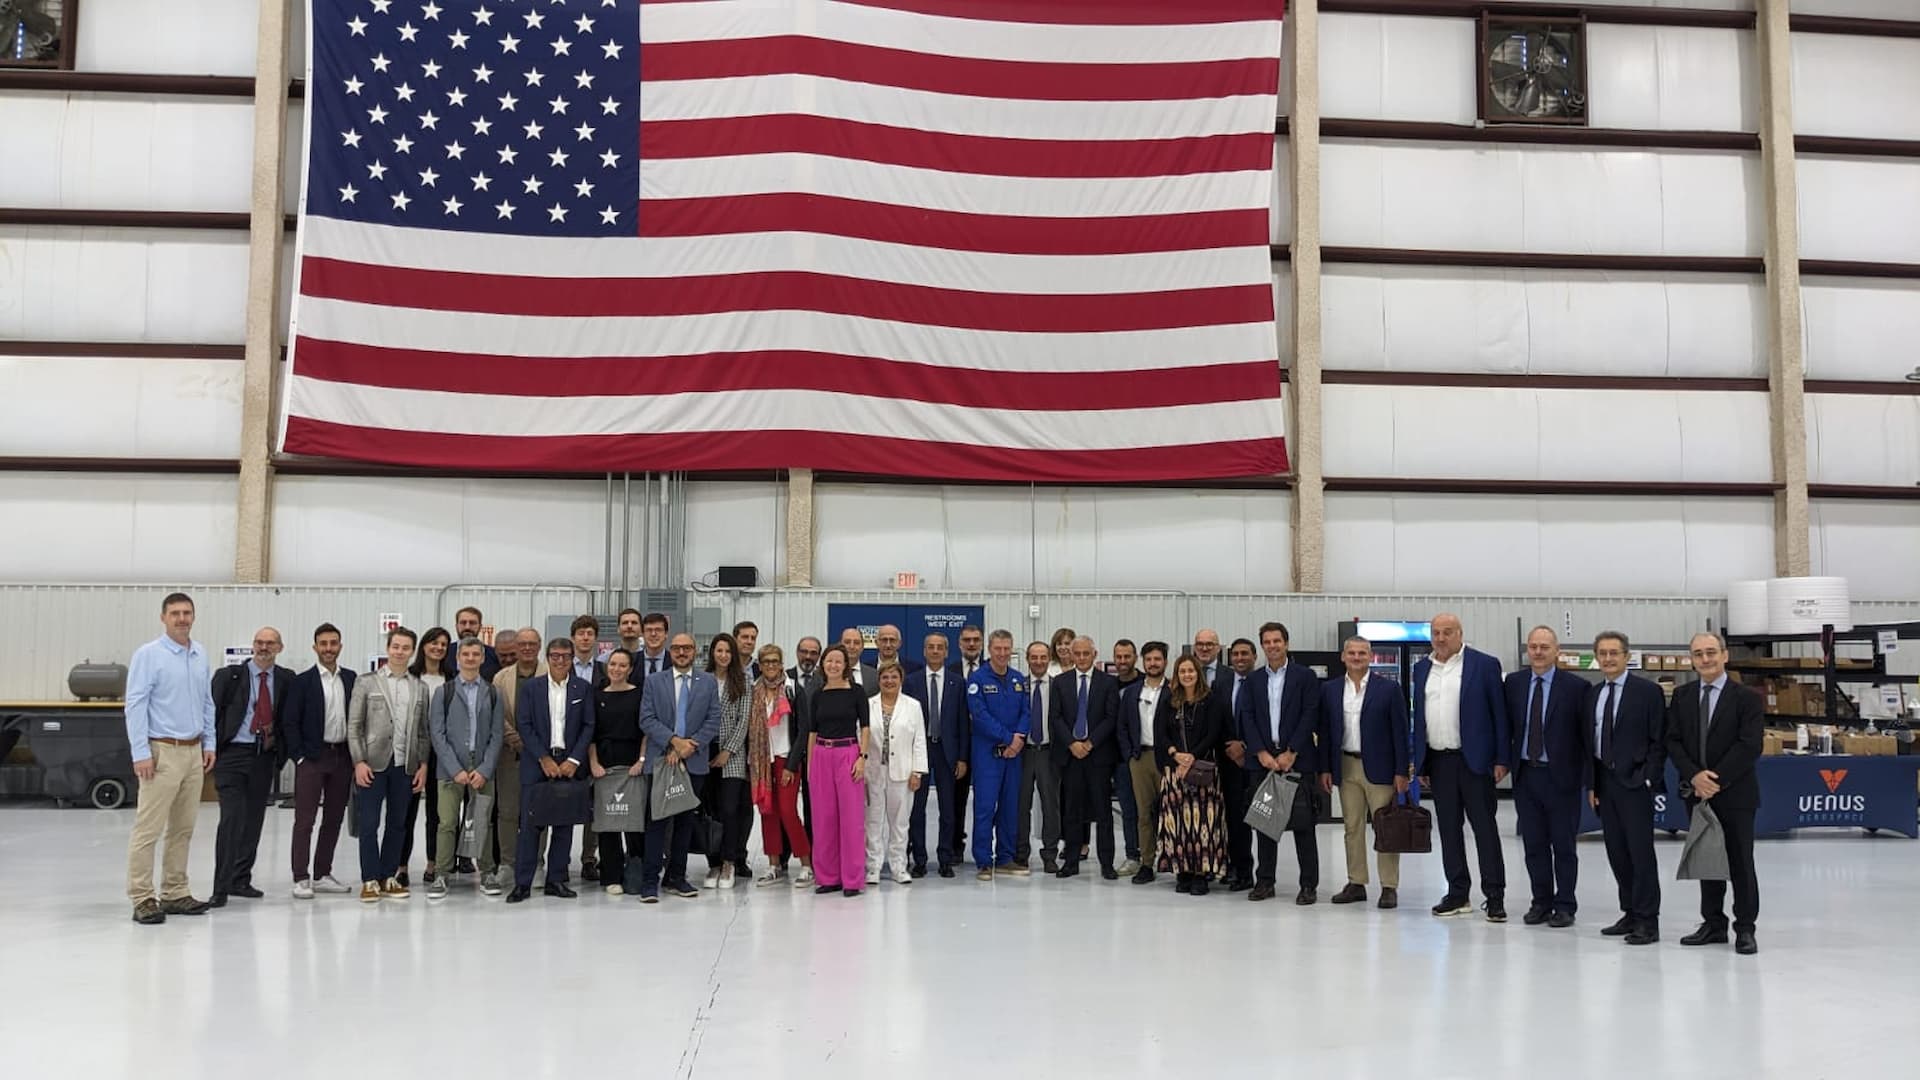 La rappresentanza spaziale italiana guidata dal presidente dell’ASI Valente incontra il mondo dello spazio degli Stati Uniti